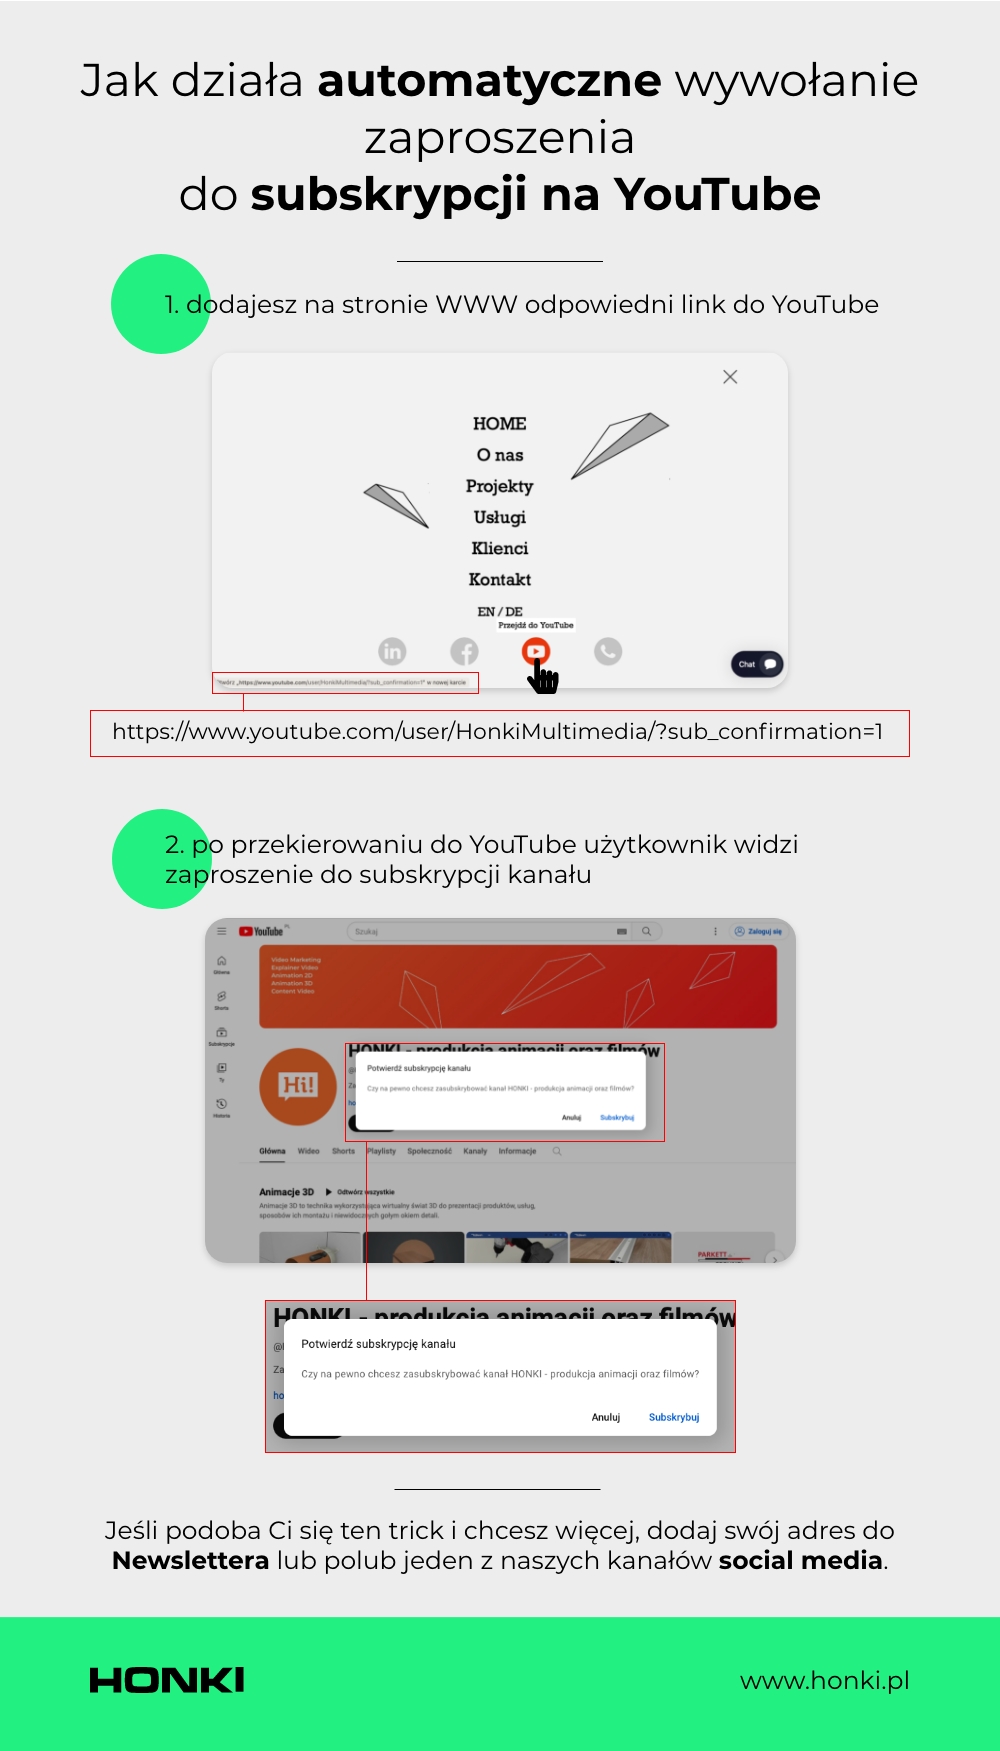 Jak zwiększyć liczbę subskrypcji na YouTube